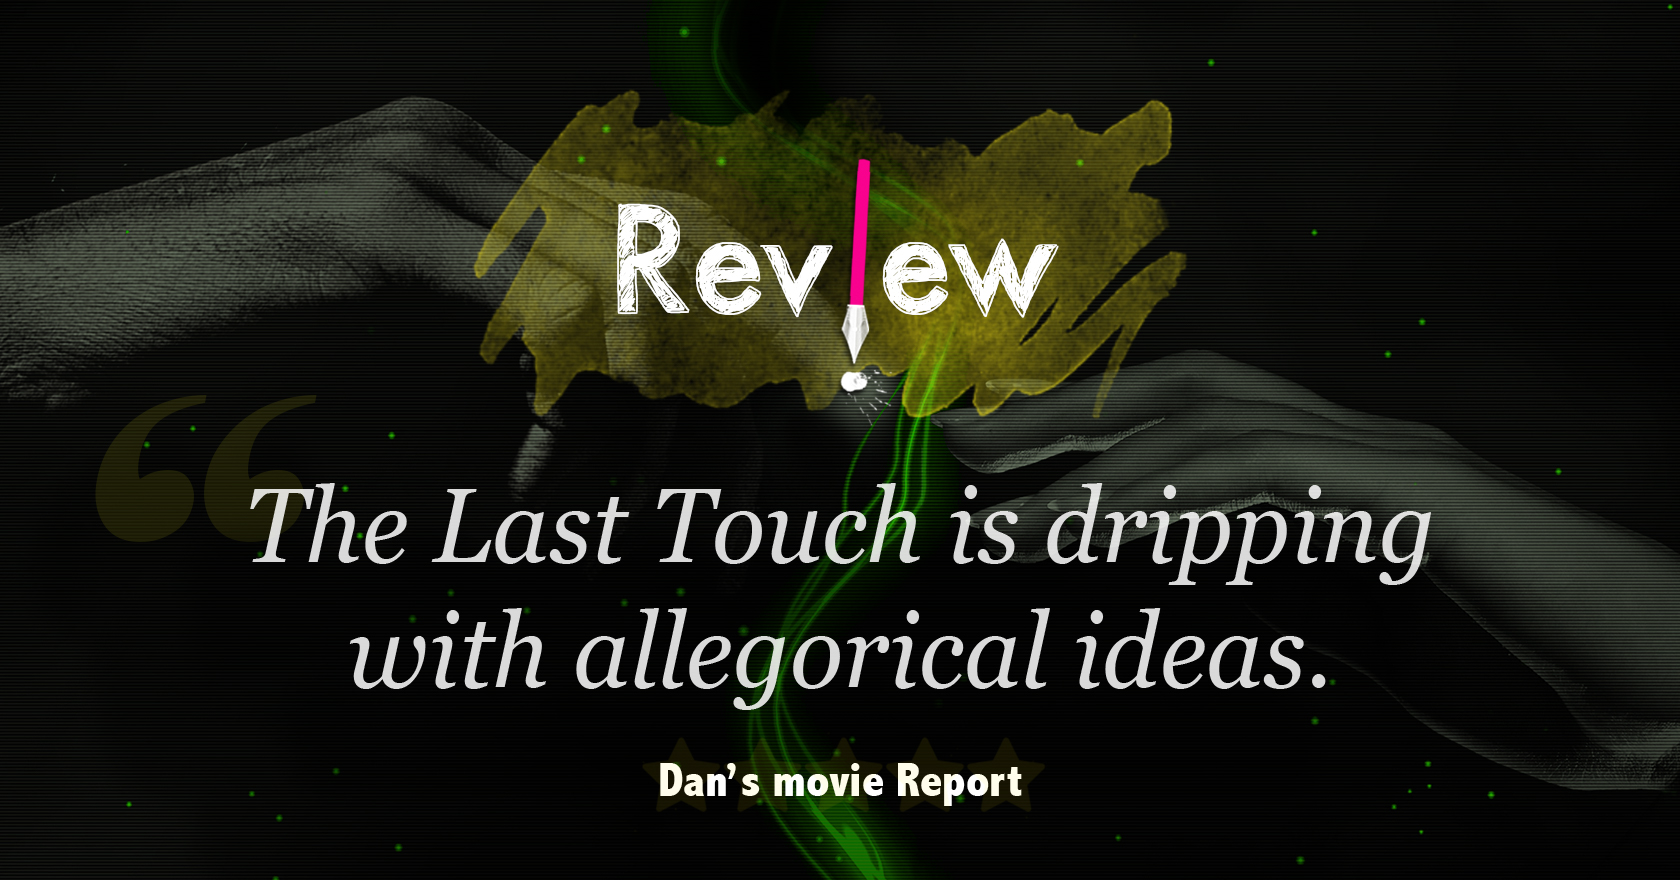 Dan’s Movie Report Review